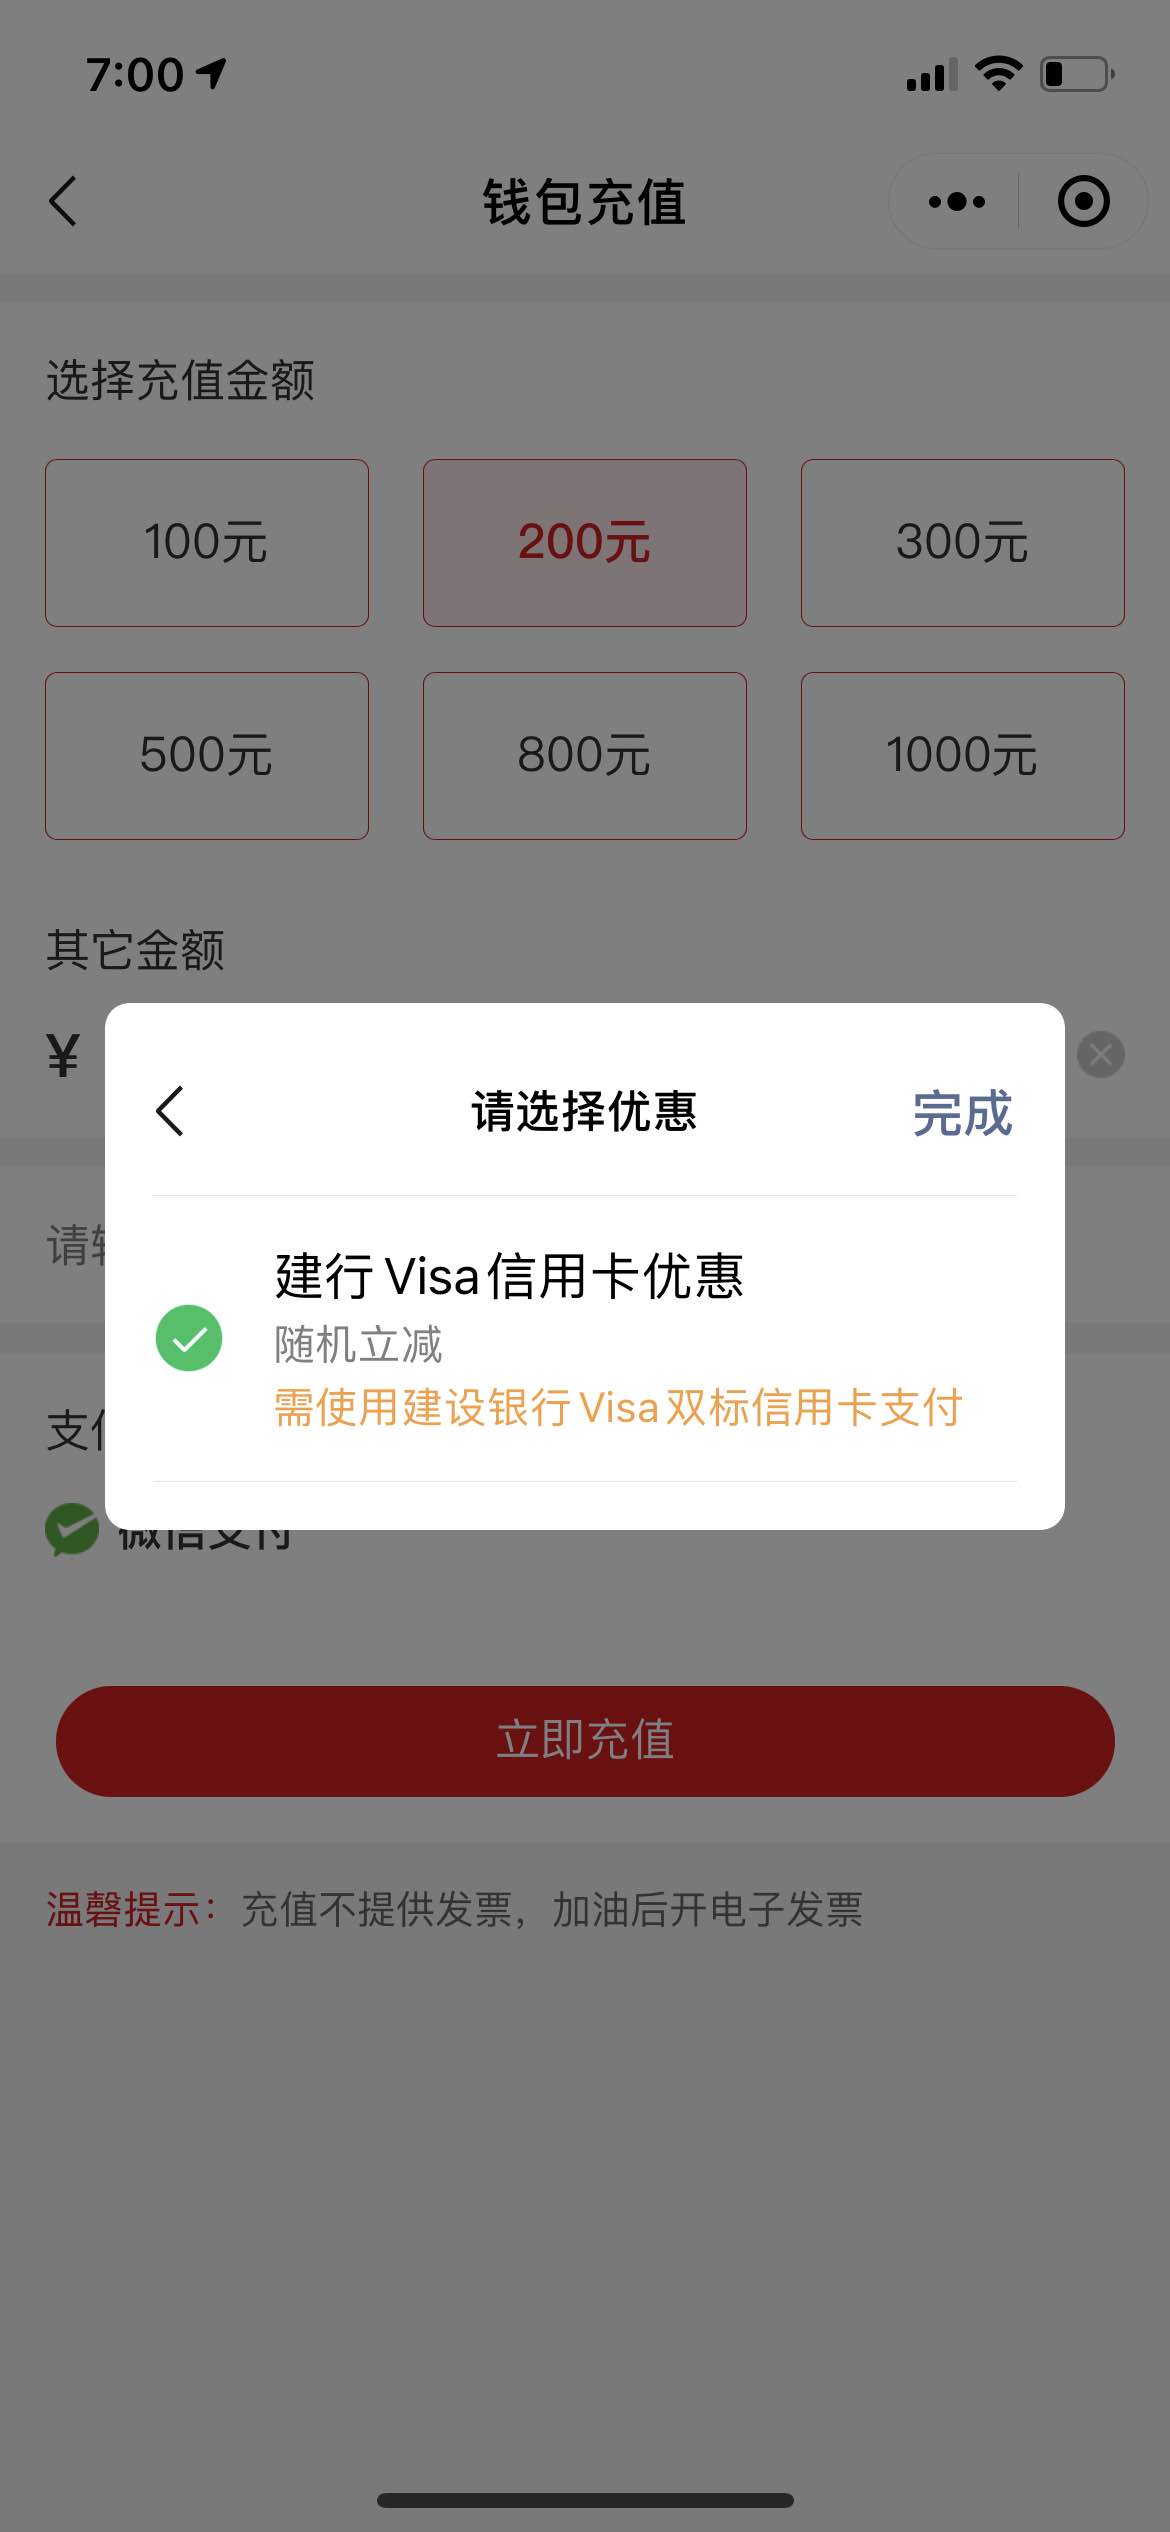 建行visa卡中石化加油优惠开始了-惠小助(52huixz.com)